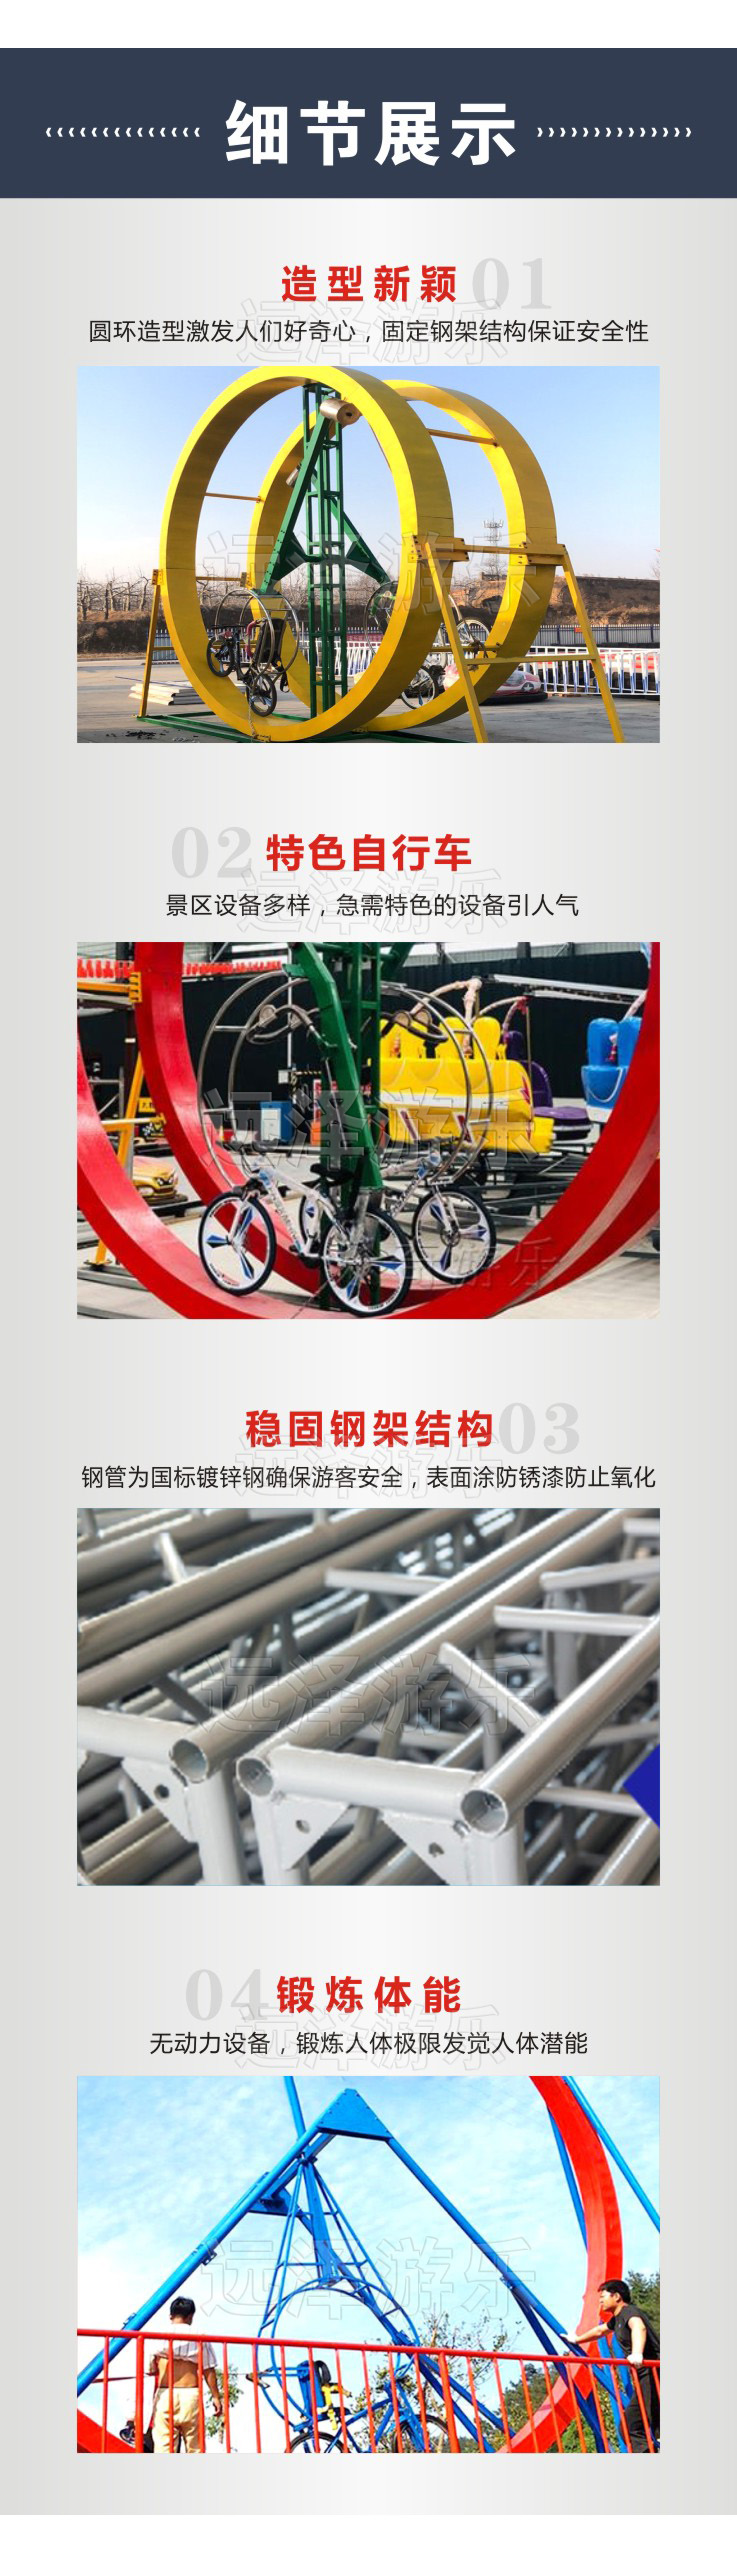 随州网红自行车游乐项目 无动力游乐园 360度健身无动力自行车 4